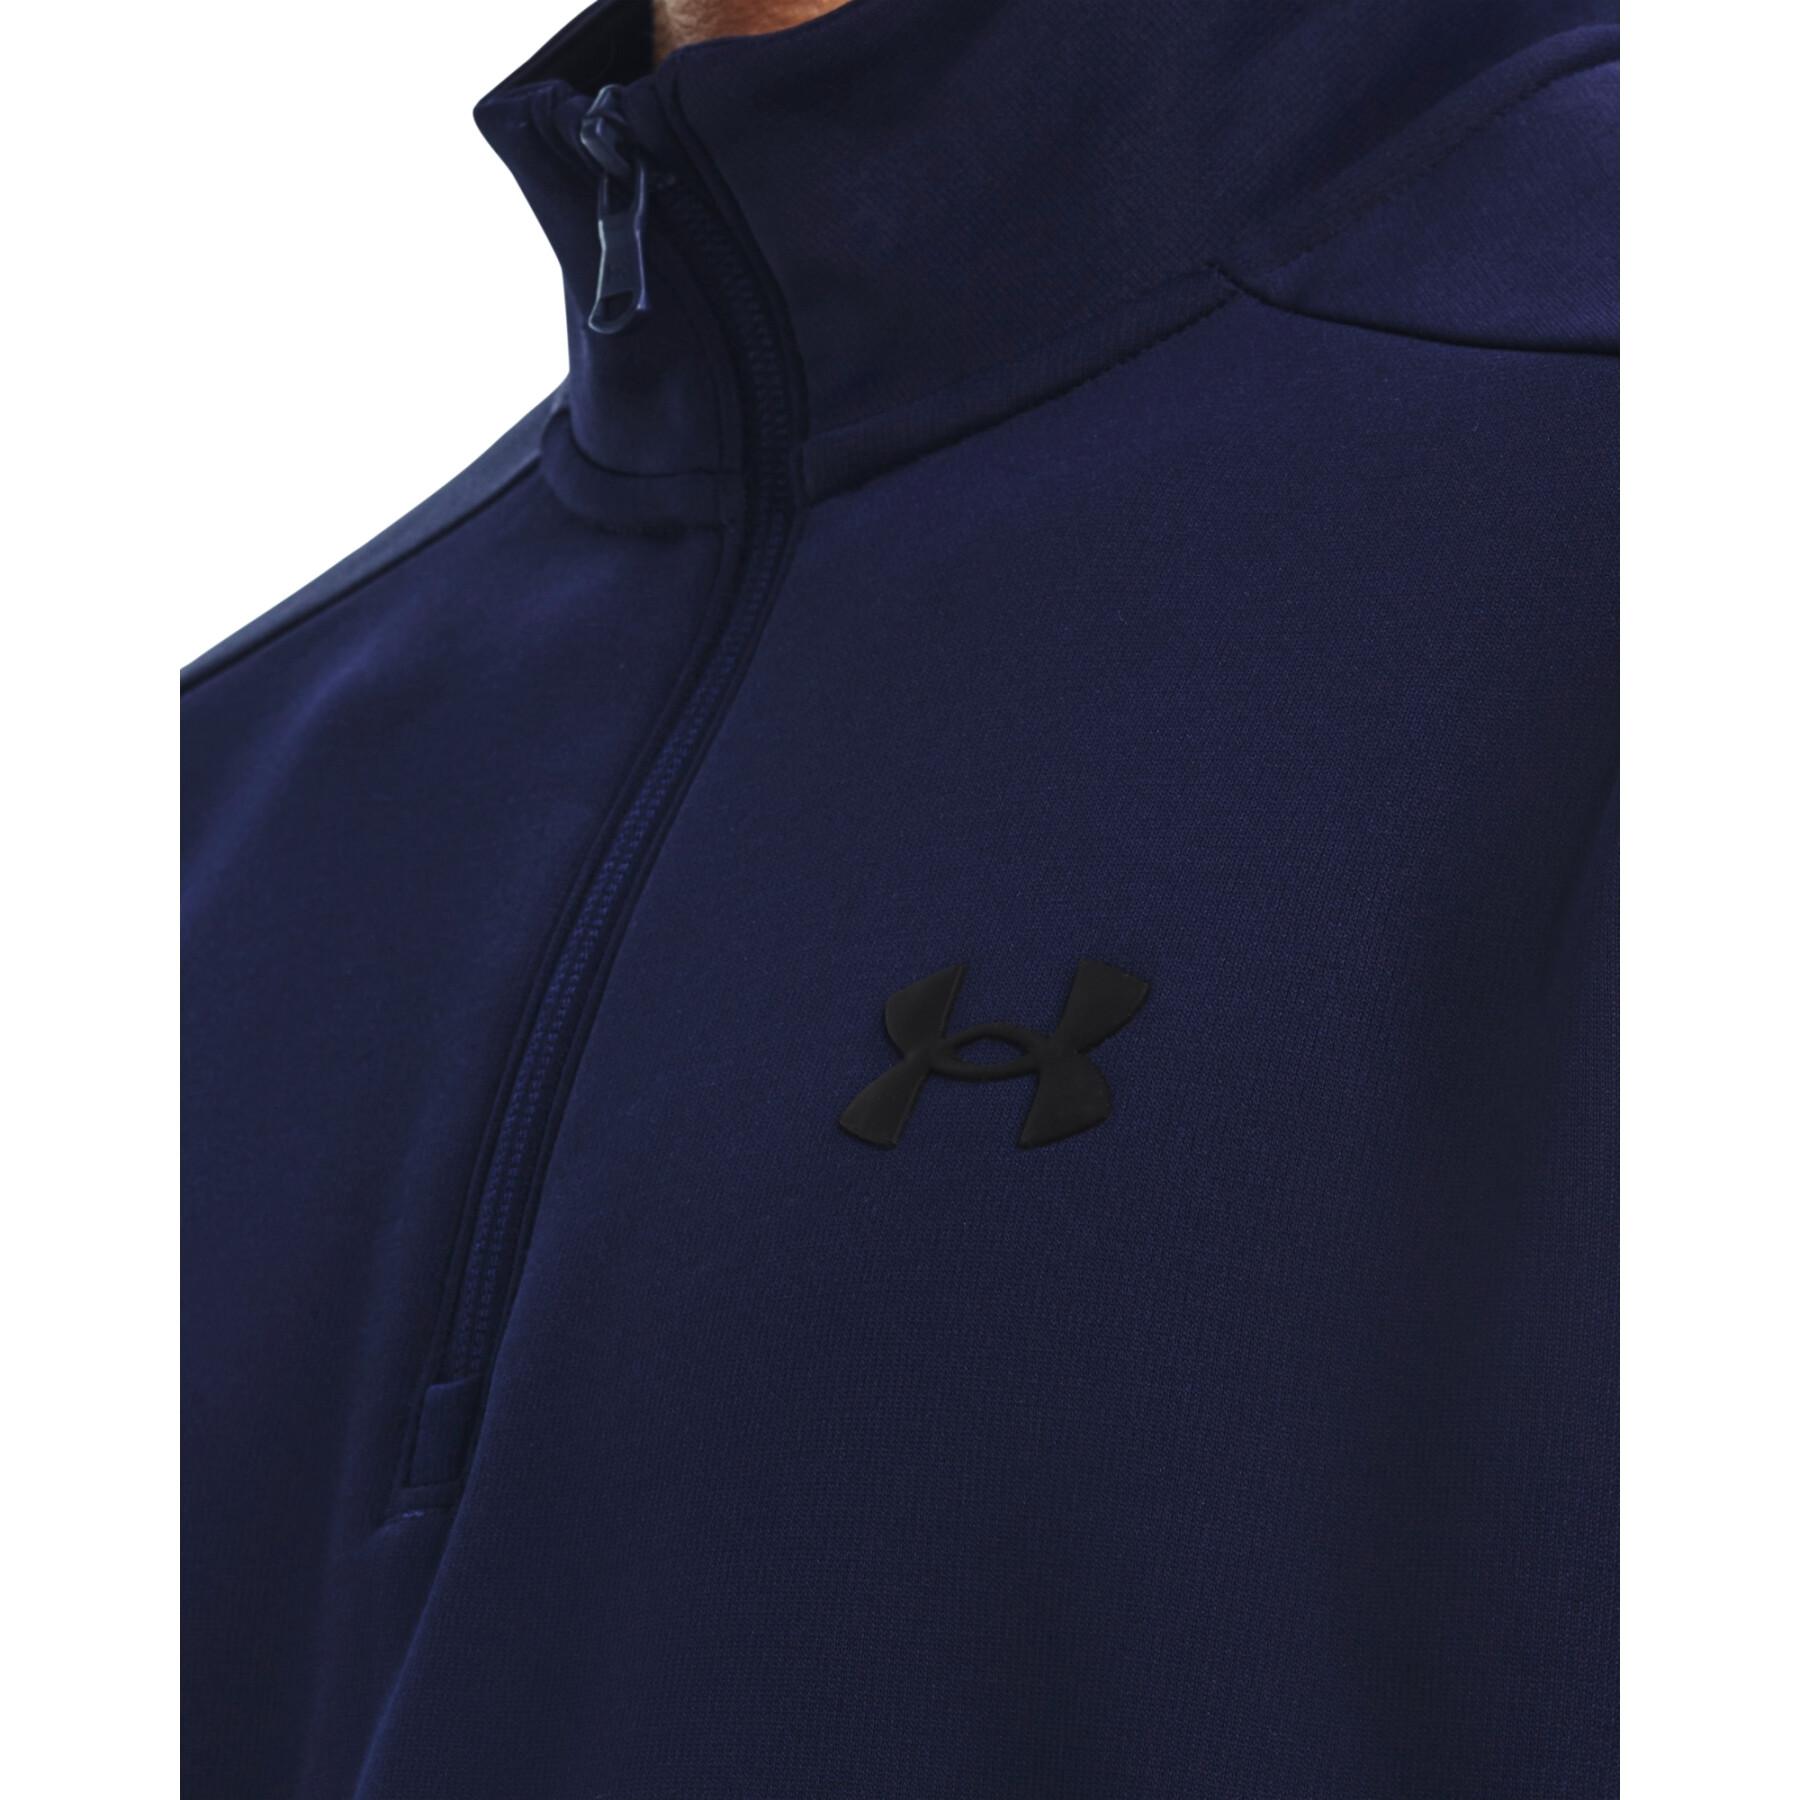 ¼ zip jacket Under Armour Fleece®